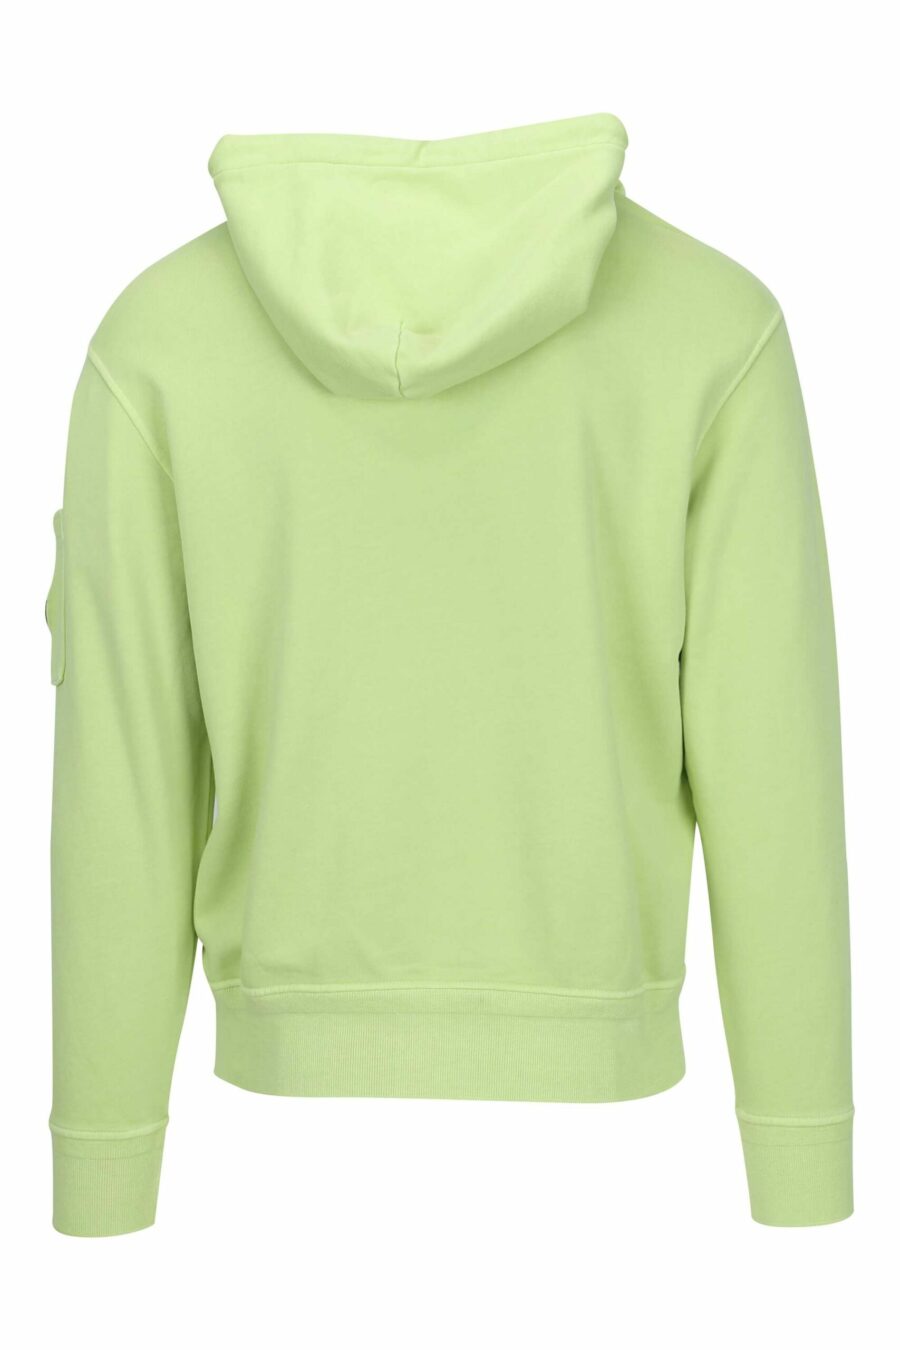 Hellgrünes Kapuzensweatshirt mit Minilogo-Linsentasche - 7620943677225 2 skaliert